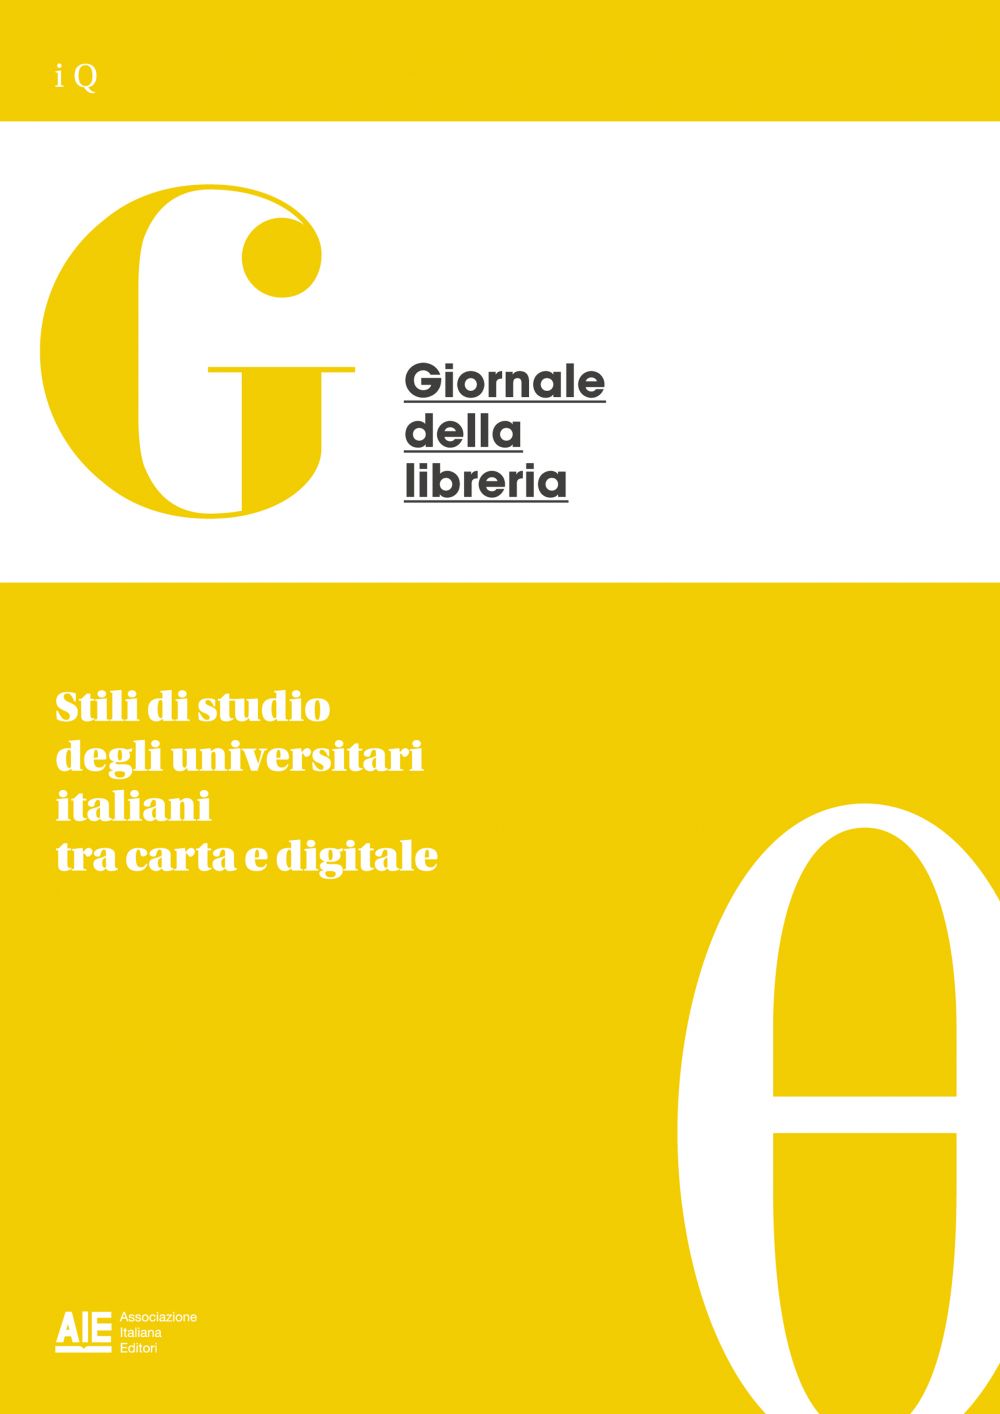 Stili di studio degli universitari italiani tra carta e digitale